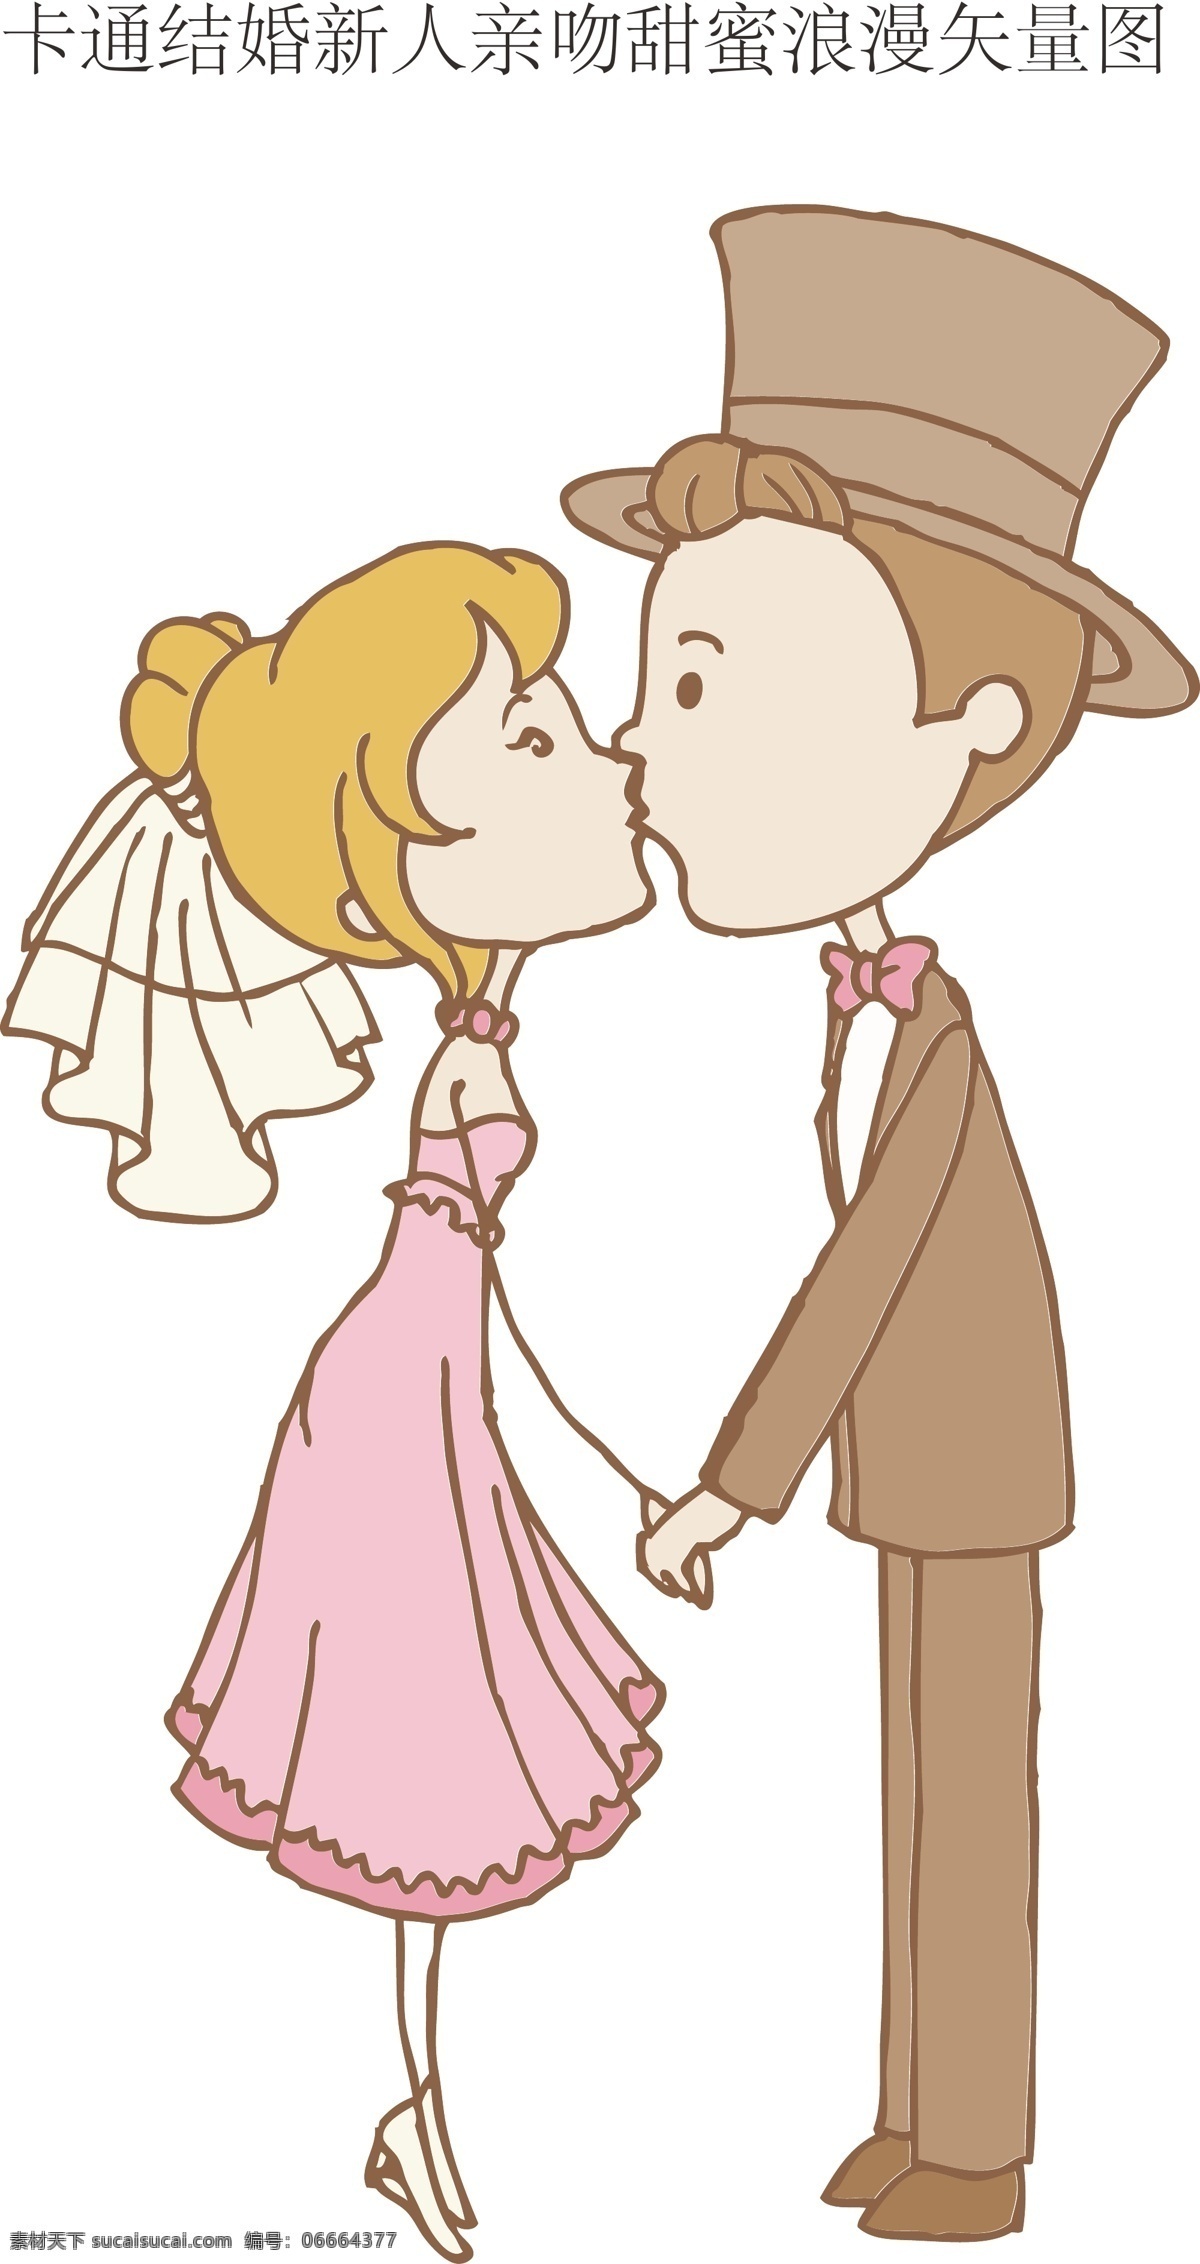 卡通 结婚 新人 亲吻 甜蜜 浪漫 矢量图 结婚新人 一般素材系列 动漫动画 动漫人物